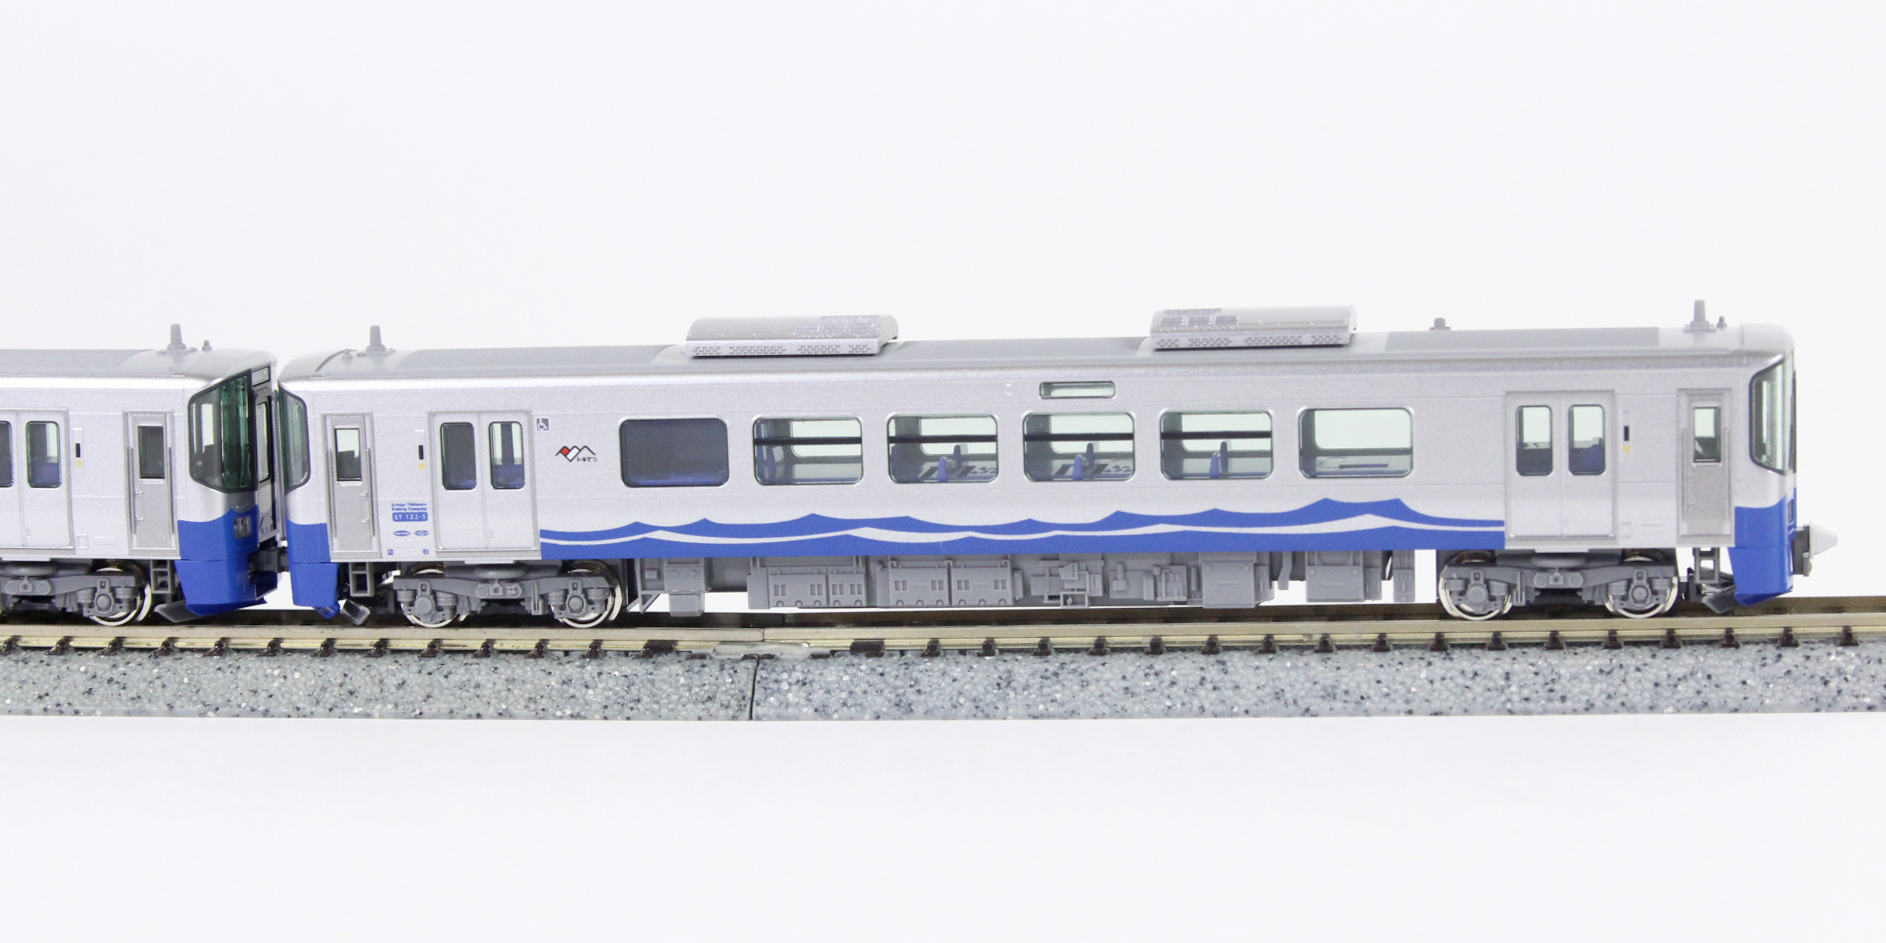 KATO 10-1510 えちごトキめき鉄道 (日本海ひすいライン) ET122系2両 